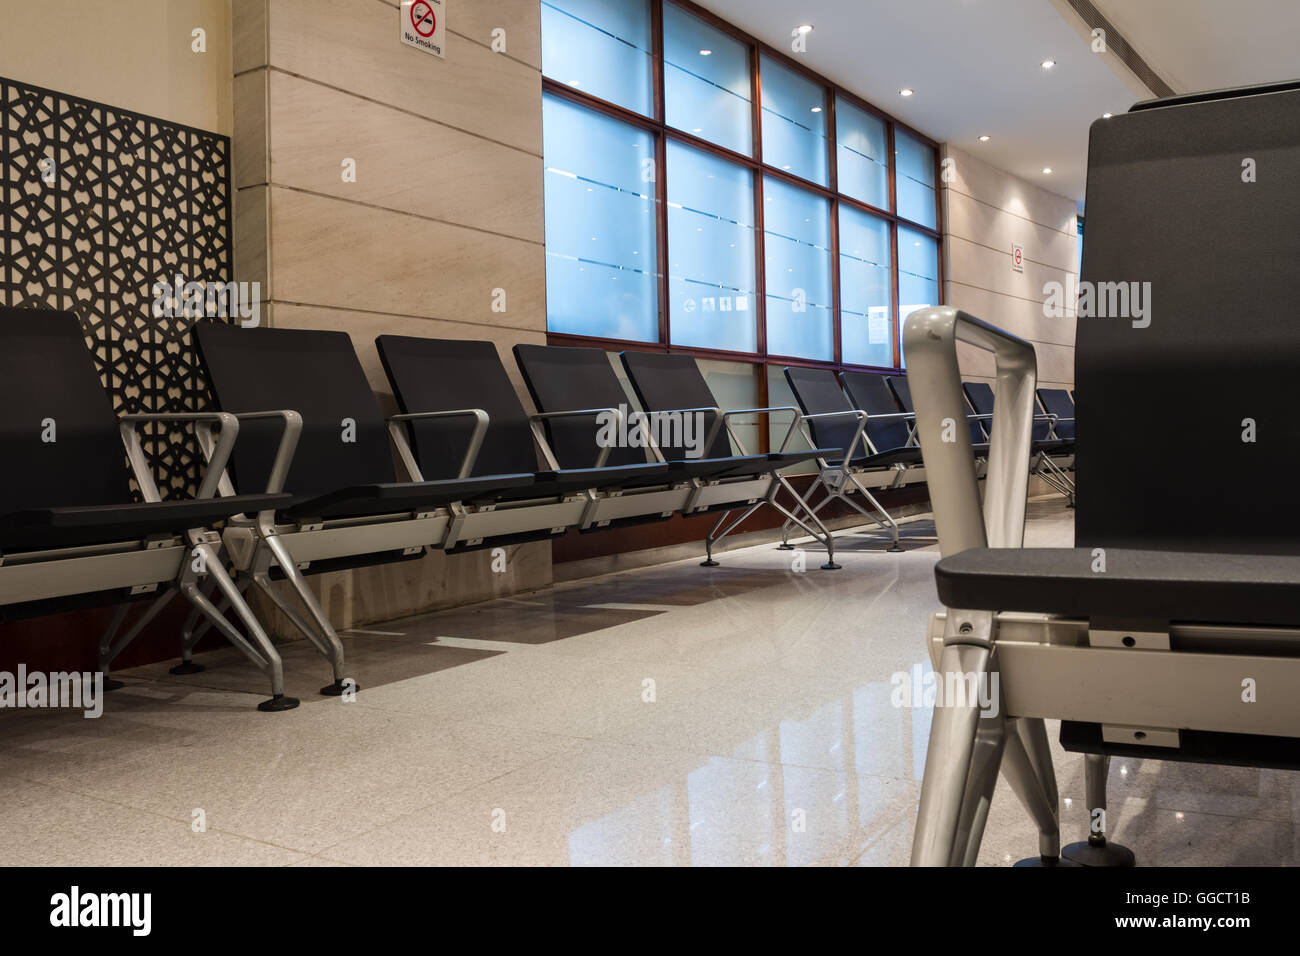 L'arrivée de l'aéroport de Doha, ces chaises dans le hall pour les passagers Banque D'Images